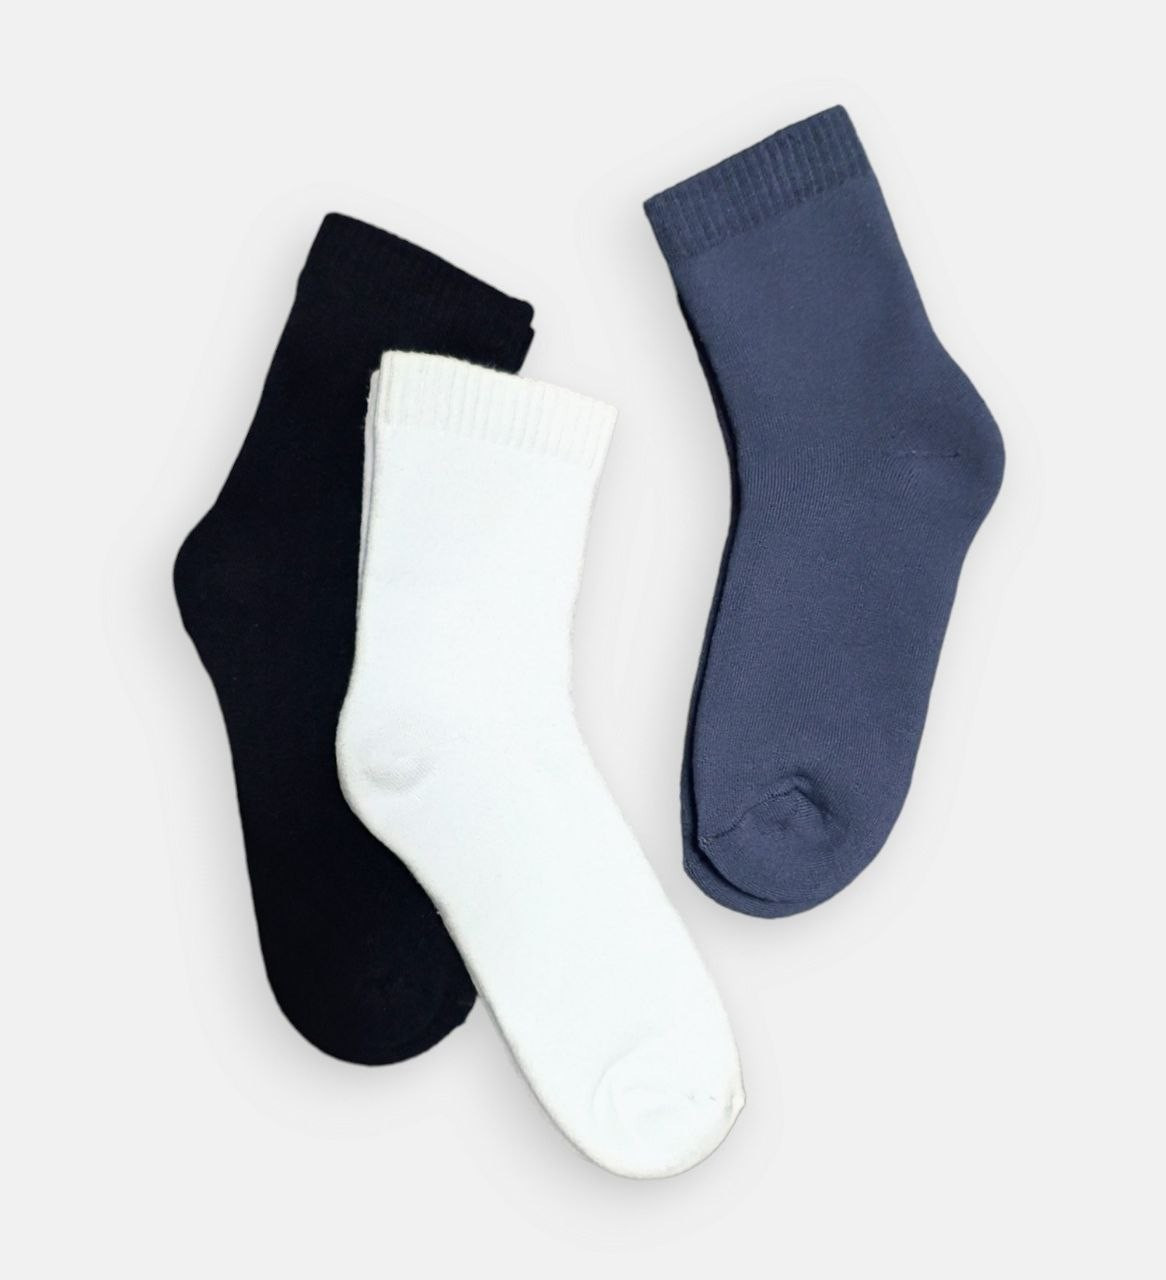 Жіночі махрові шкарпетки на зиму TwinSocks 23-25 (36-39) нар. Чорні, білі, сірі